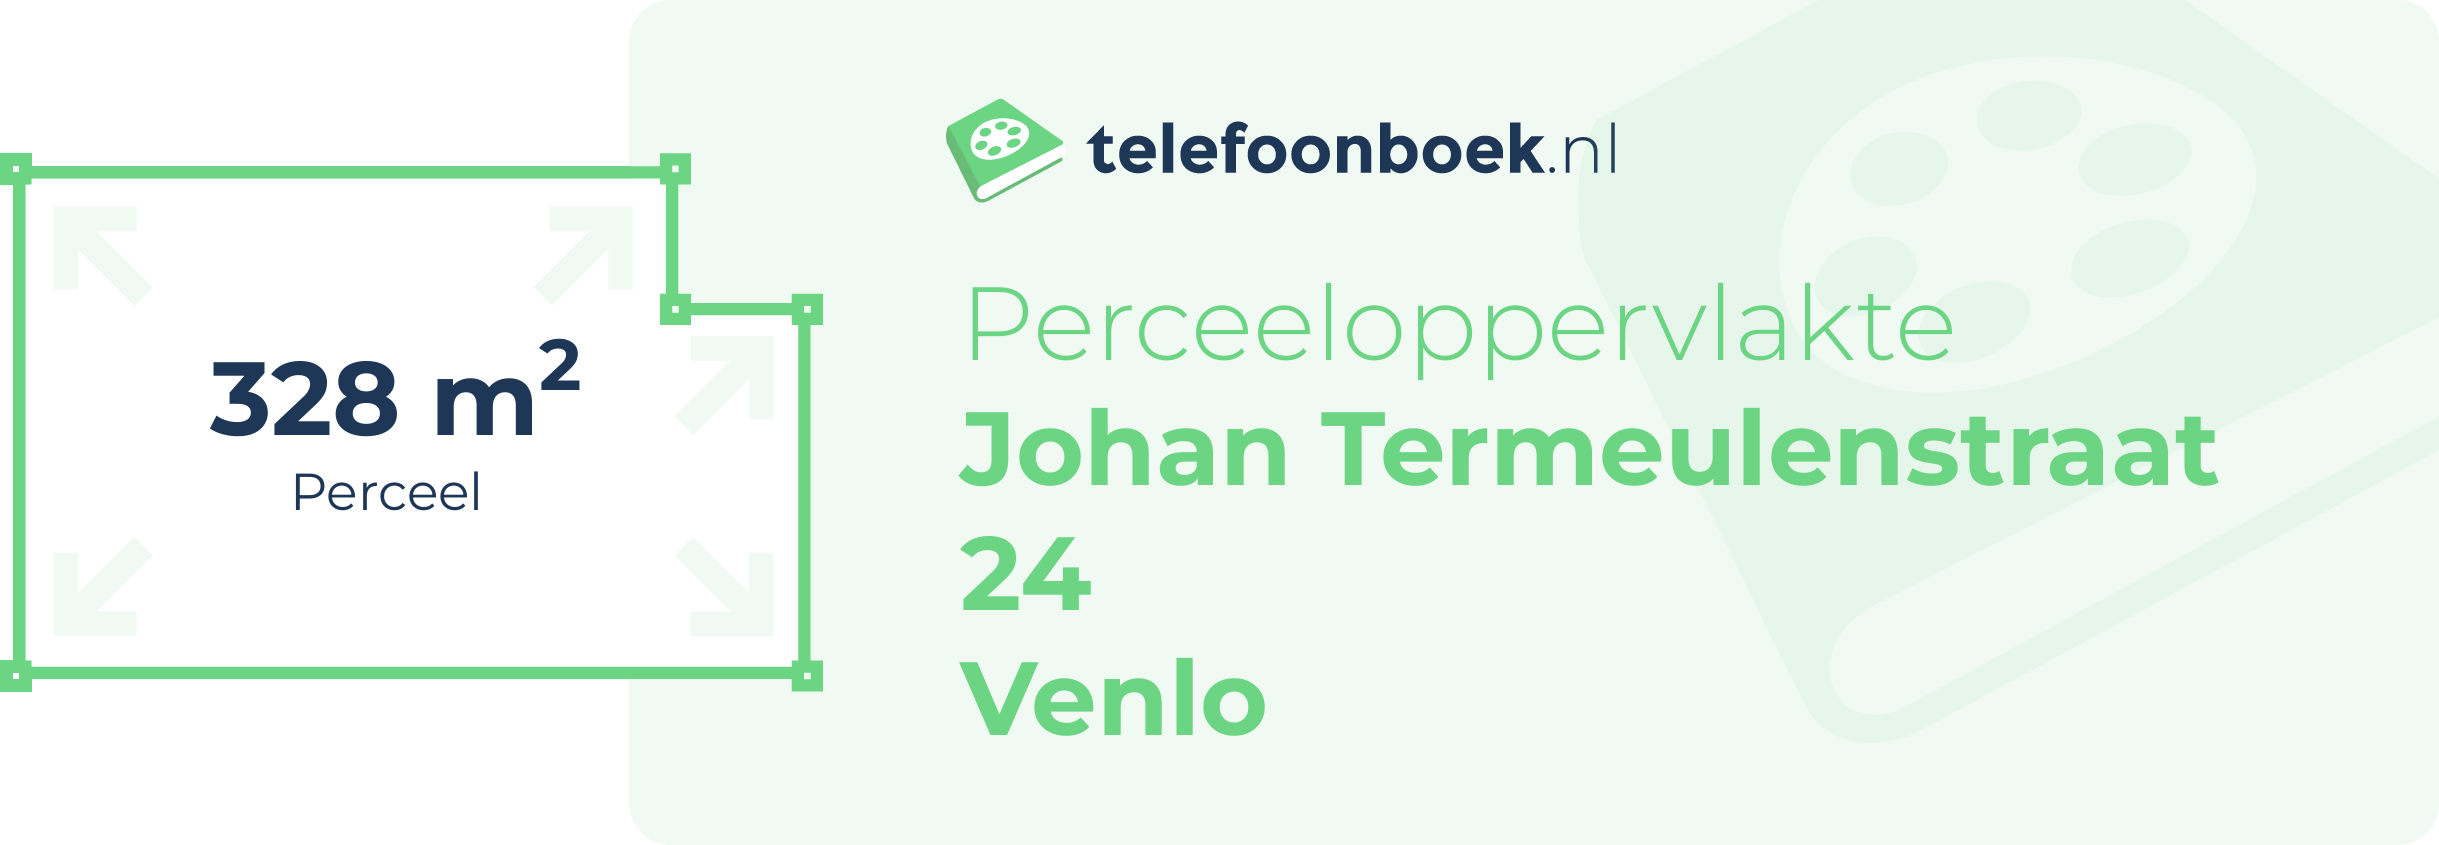 Perceeloppervlakte Johan Termeulenstraat 24 Venlo